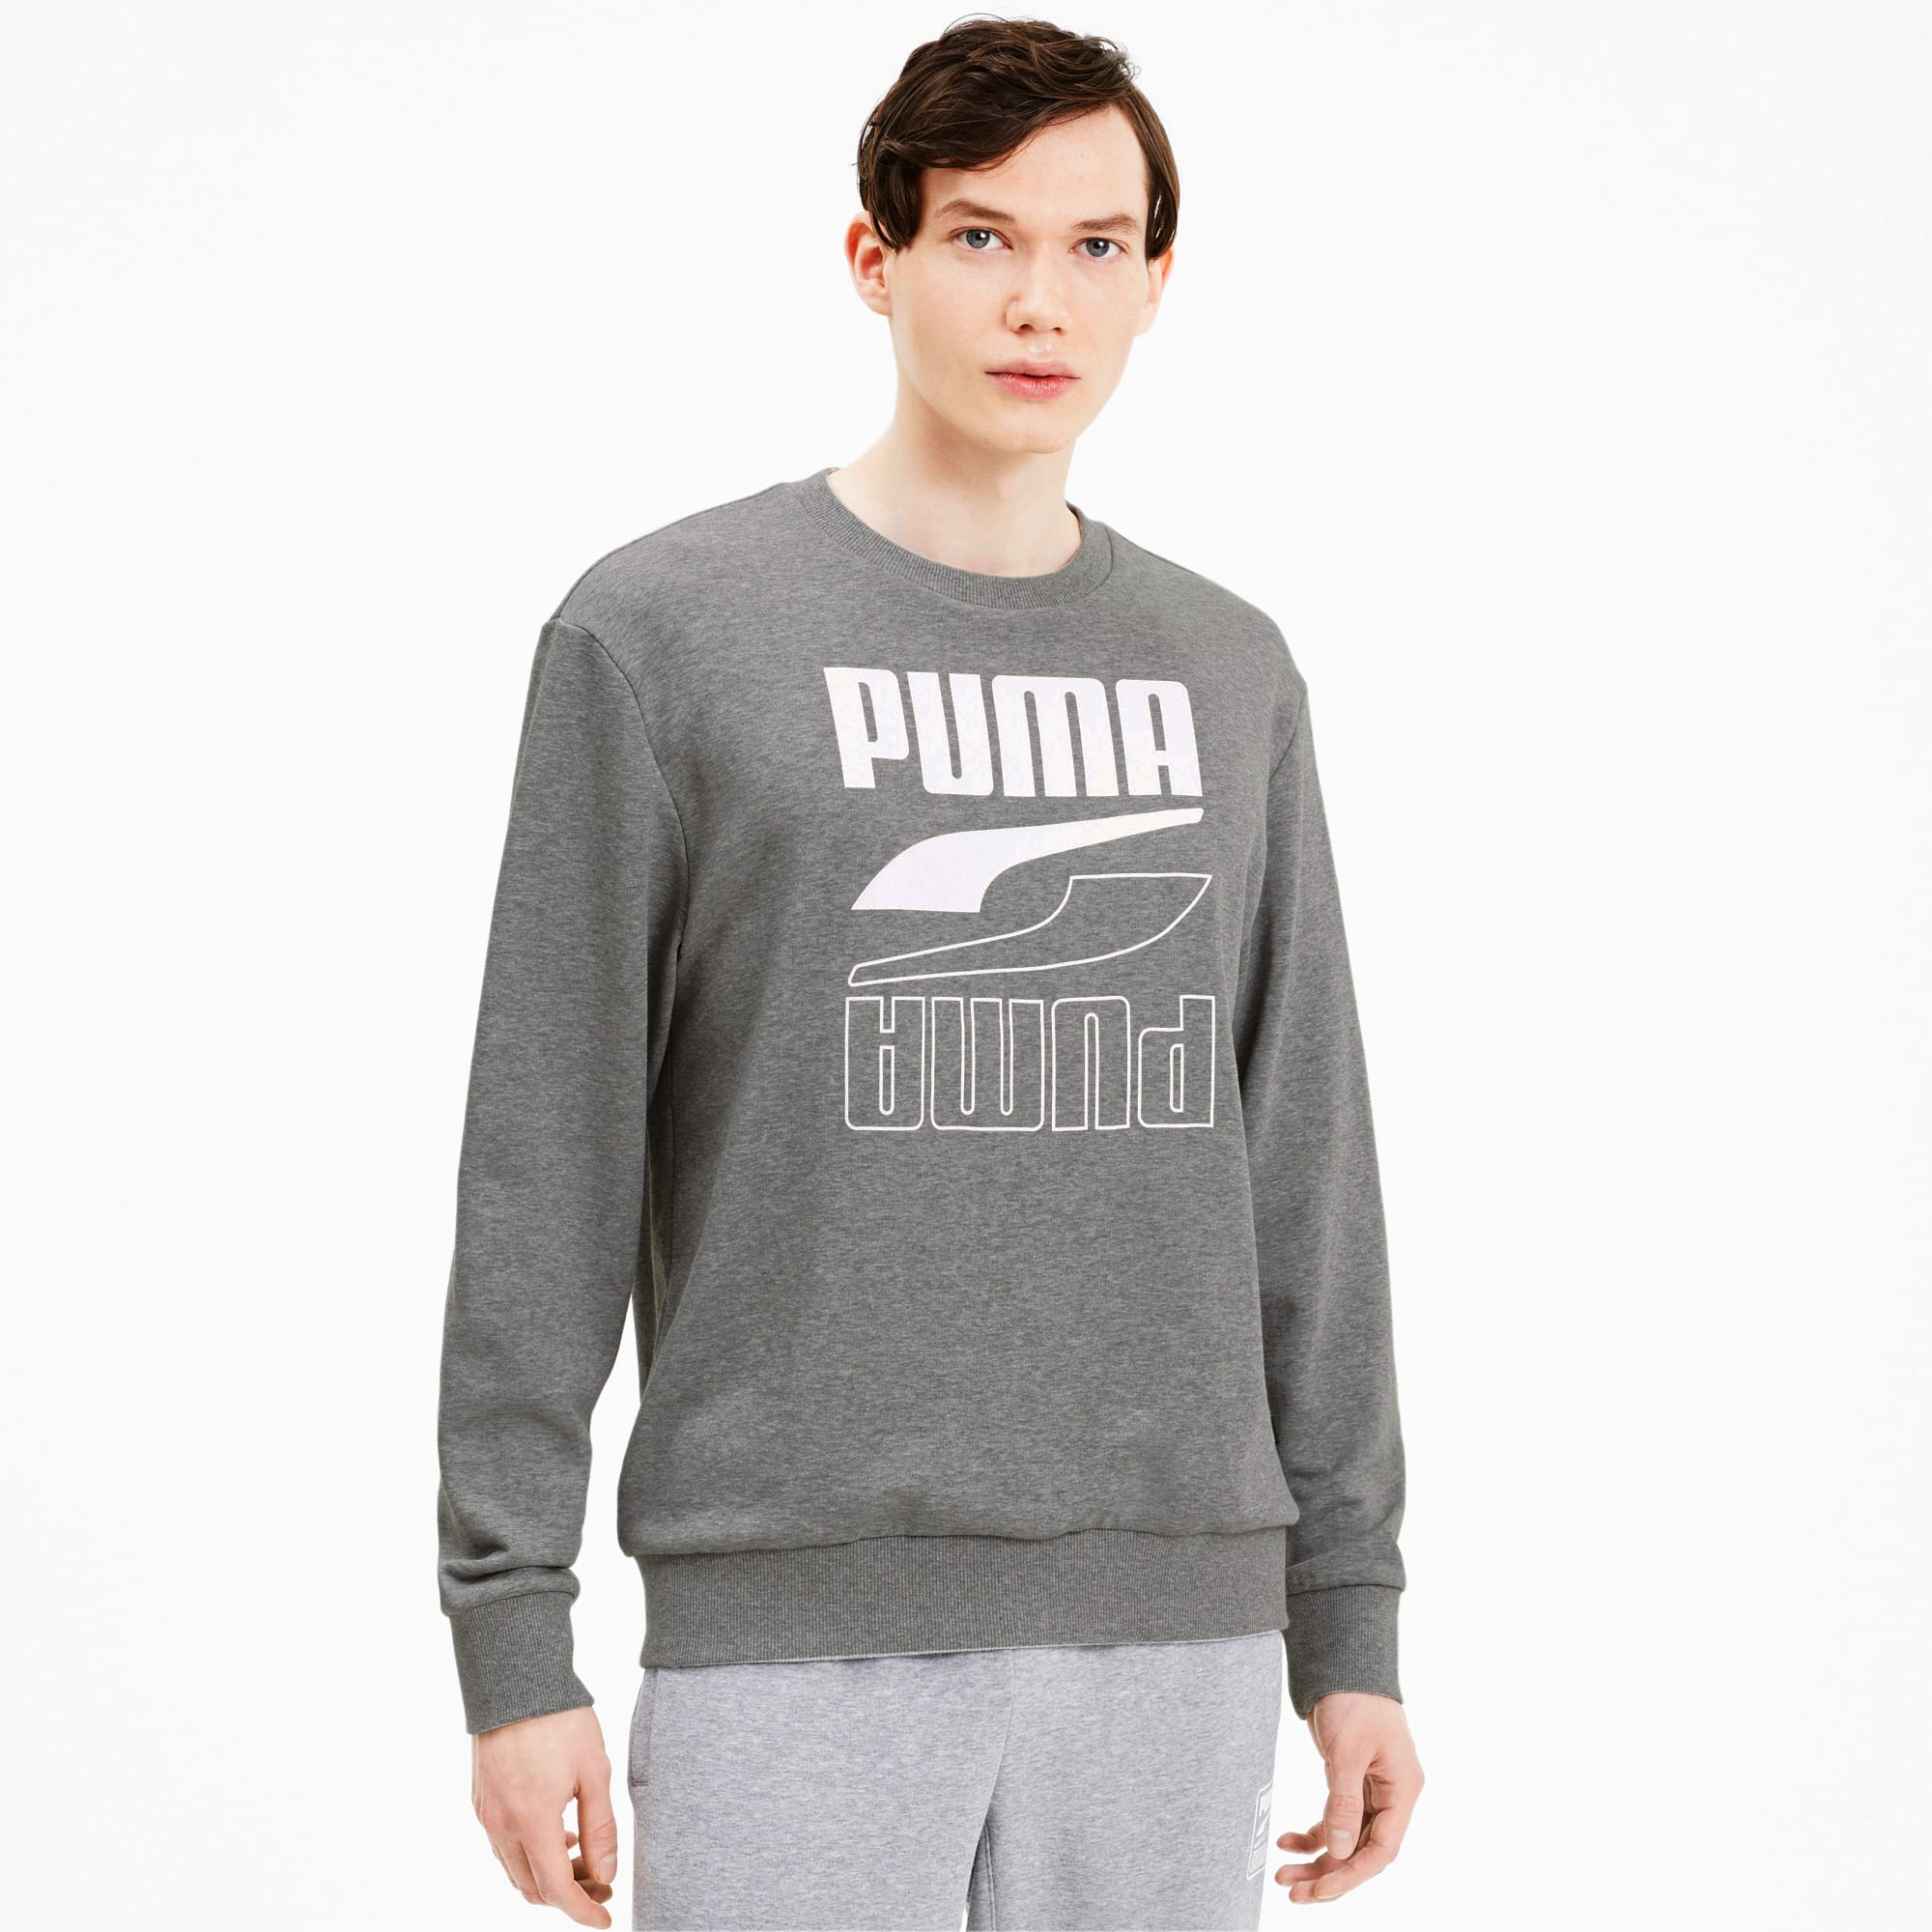 puma men's crew neck sweatshirt